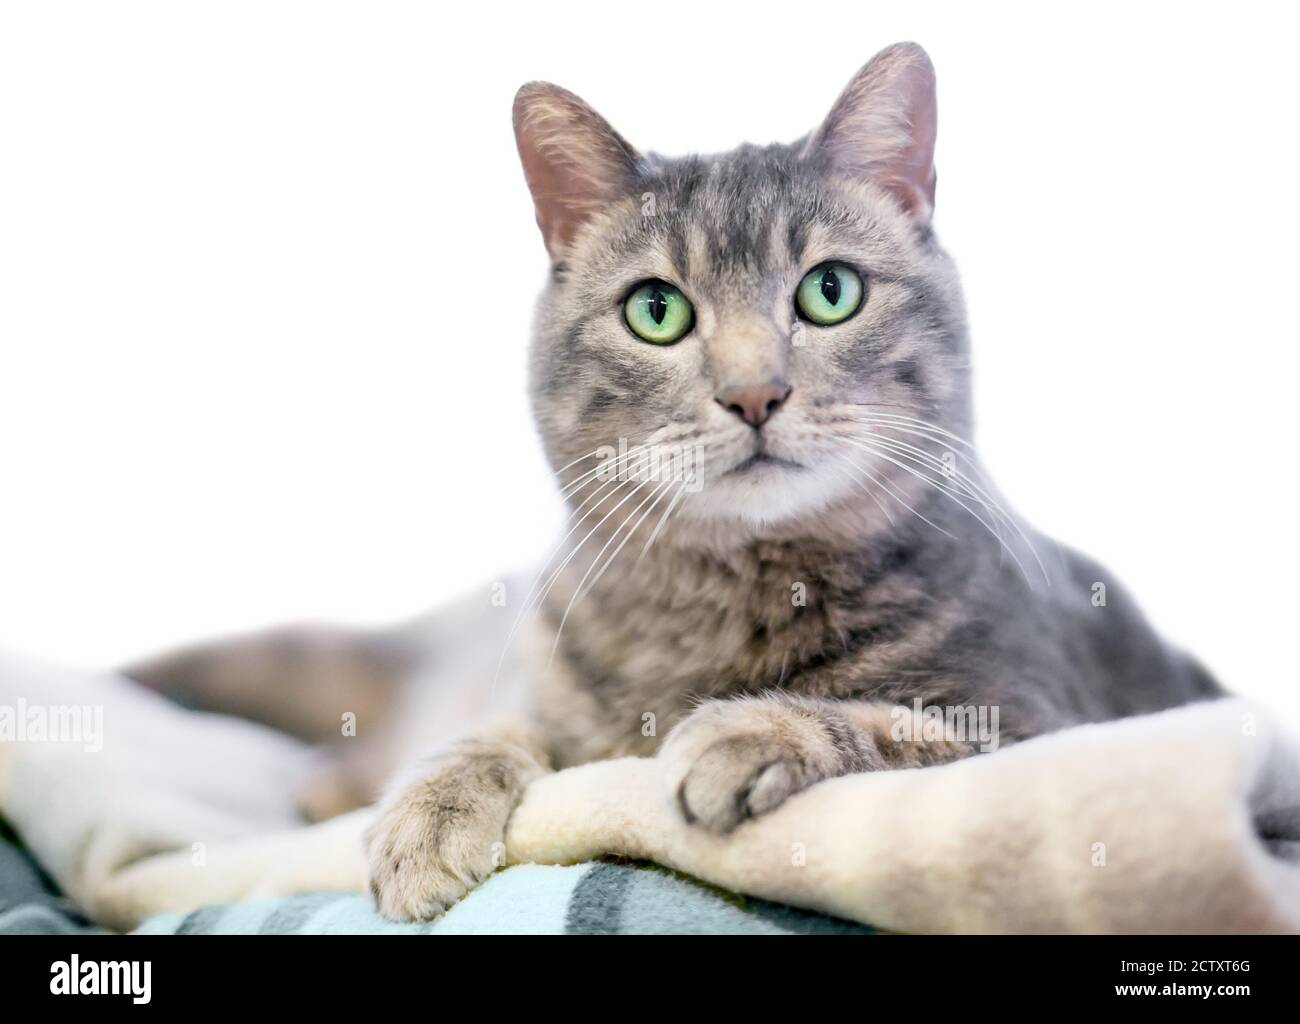 Un chat tabby gris avec des yeux verts couchés une couverture et regarder l'appareil photo Banque D'Images